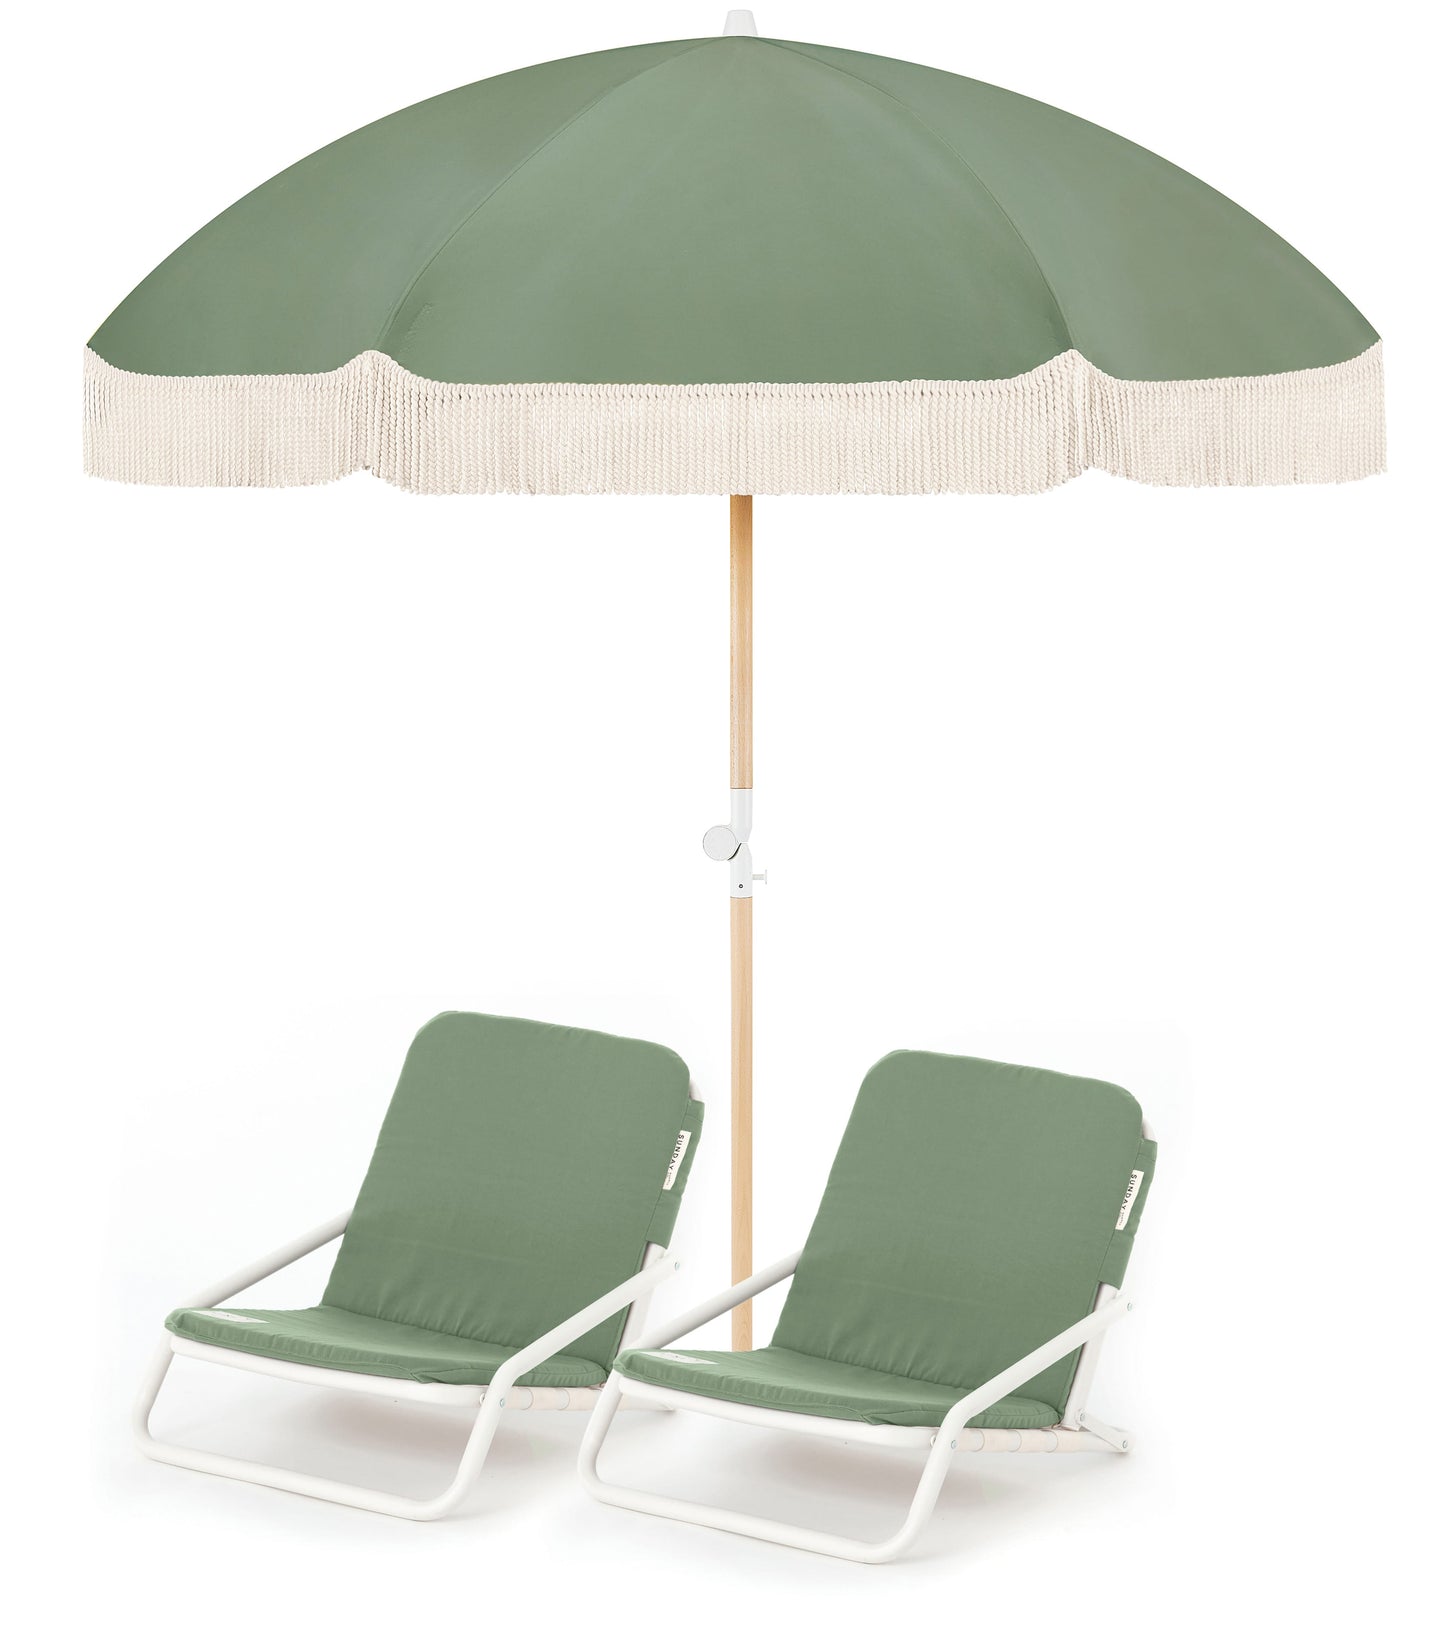 Tallow Beach Umbrella & Beach Chair Set